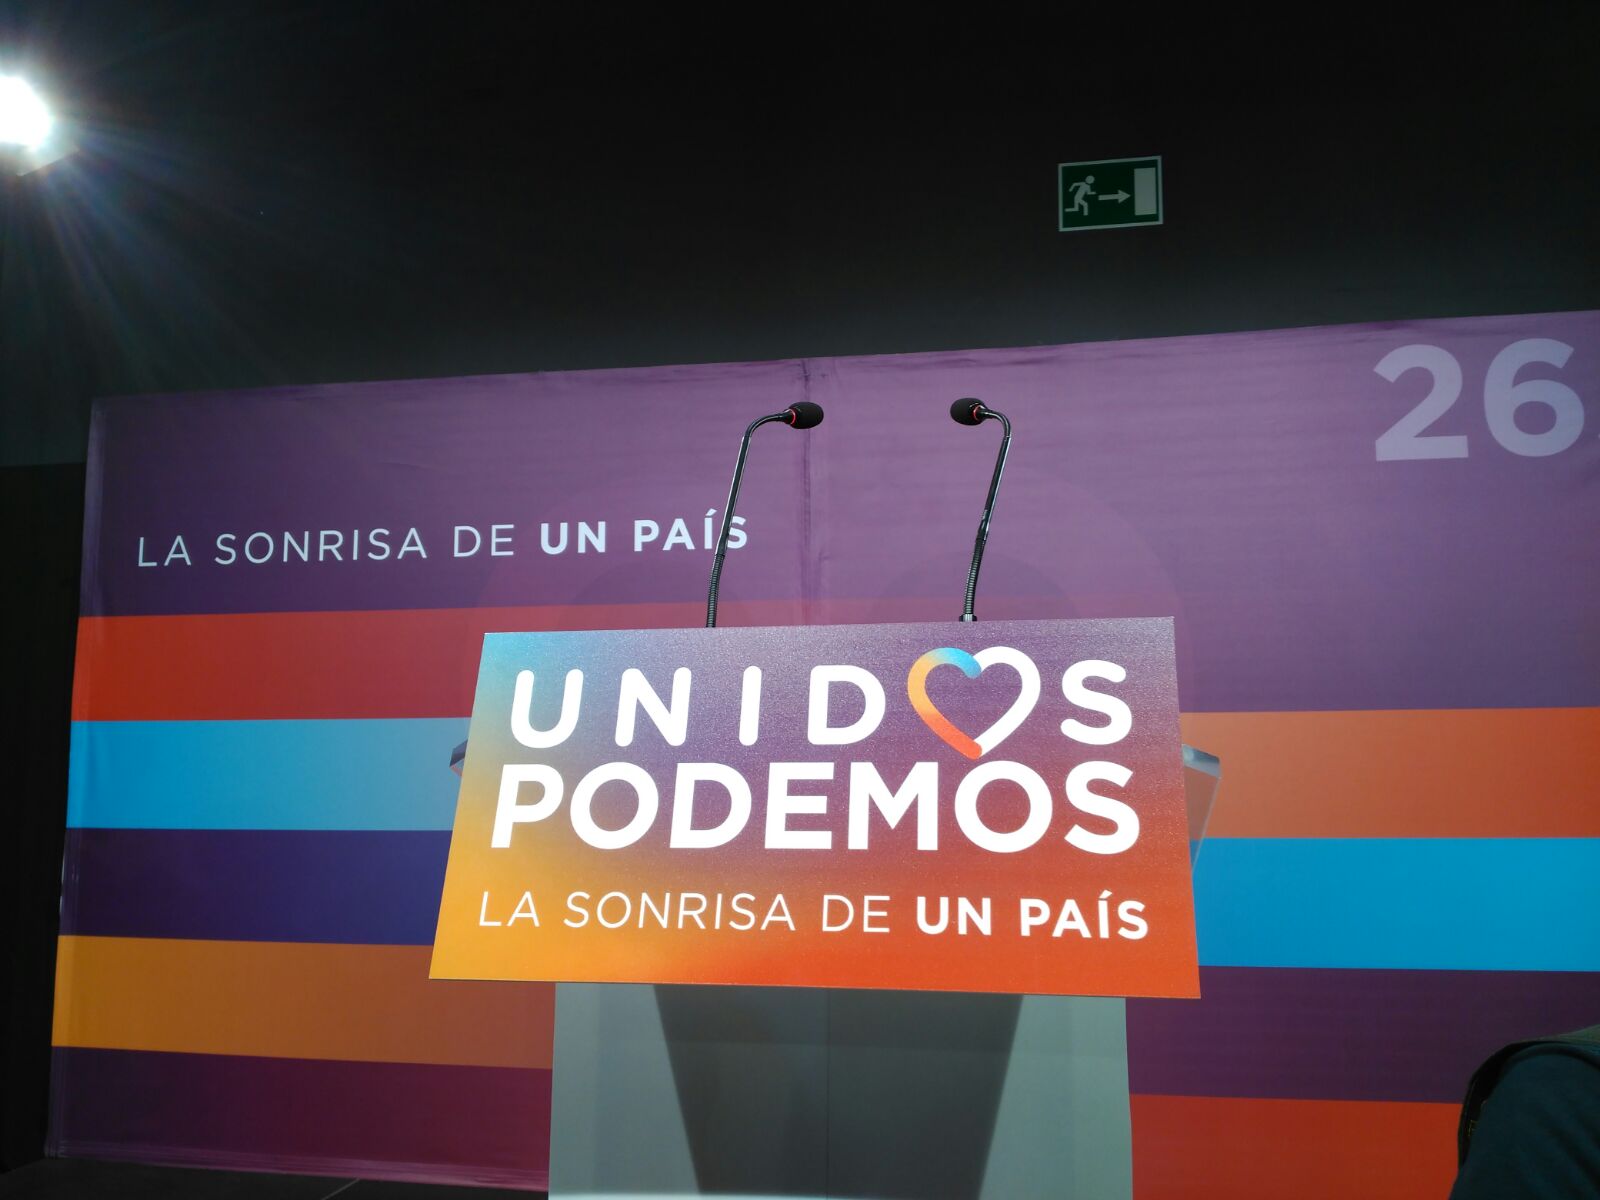 El teatro Goya, sede temporal de Podemos para seguir los resultados